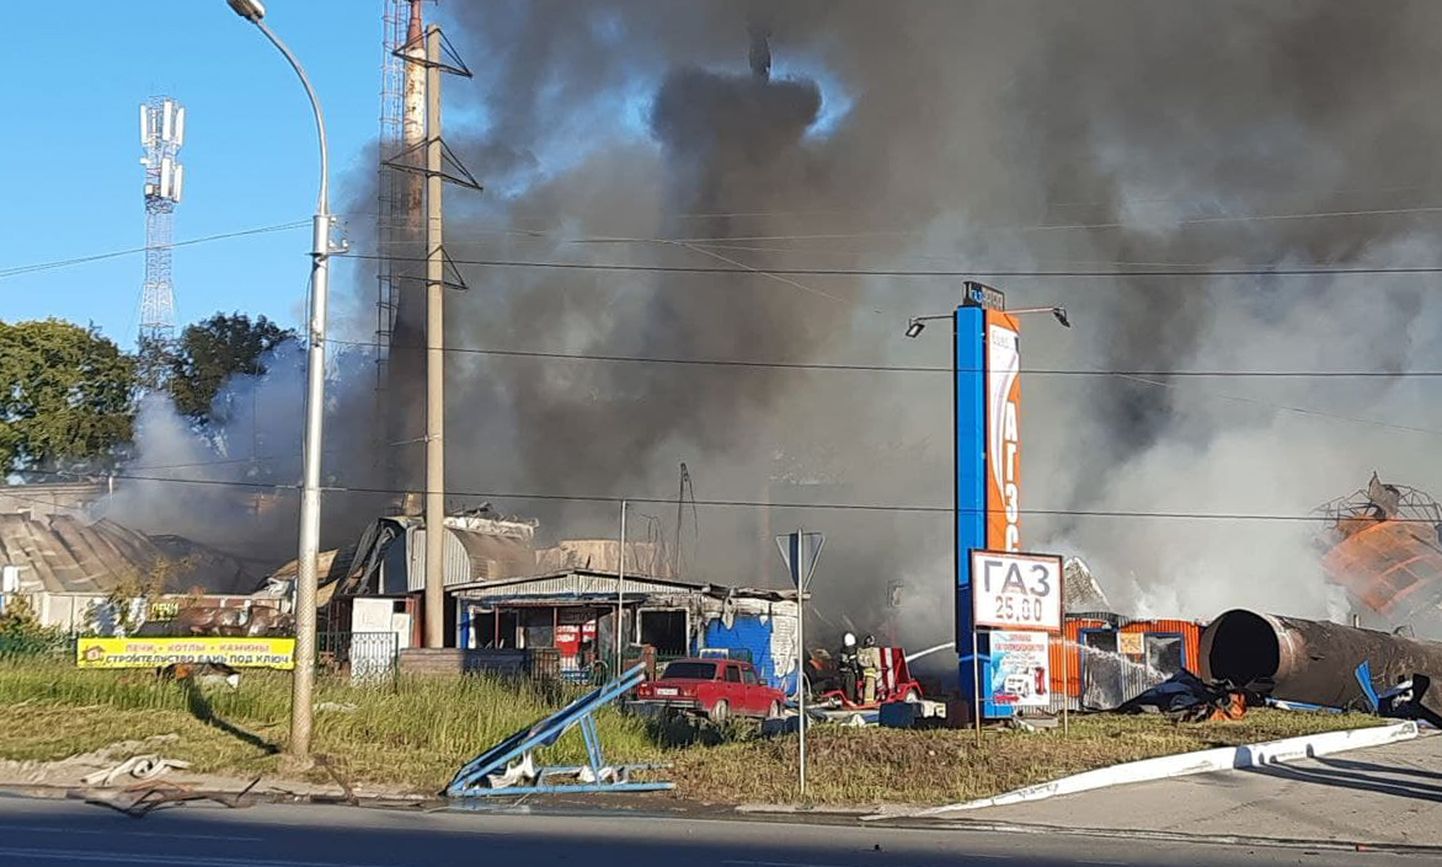 Novosibirskis sai esmaspäeval bensiinijaama plahvatuses kannatada 16 inimest.